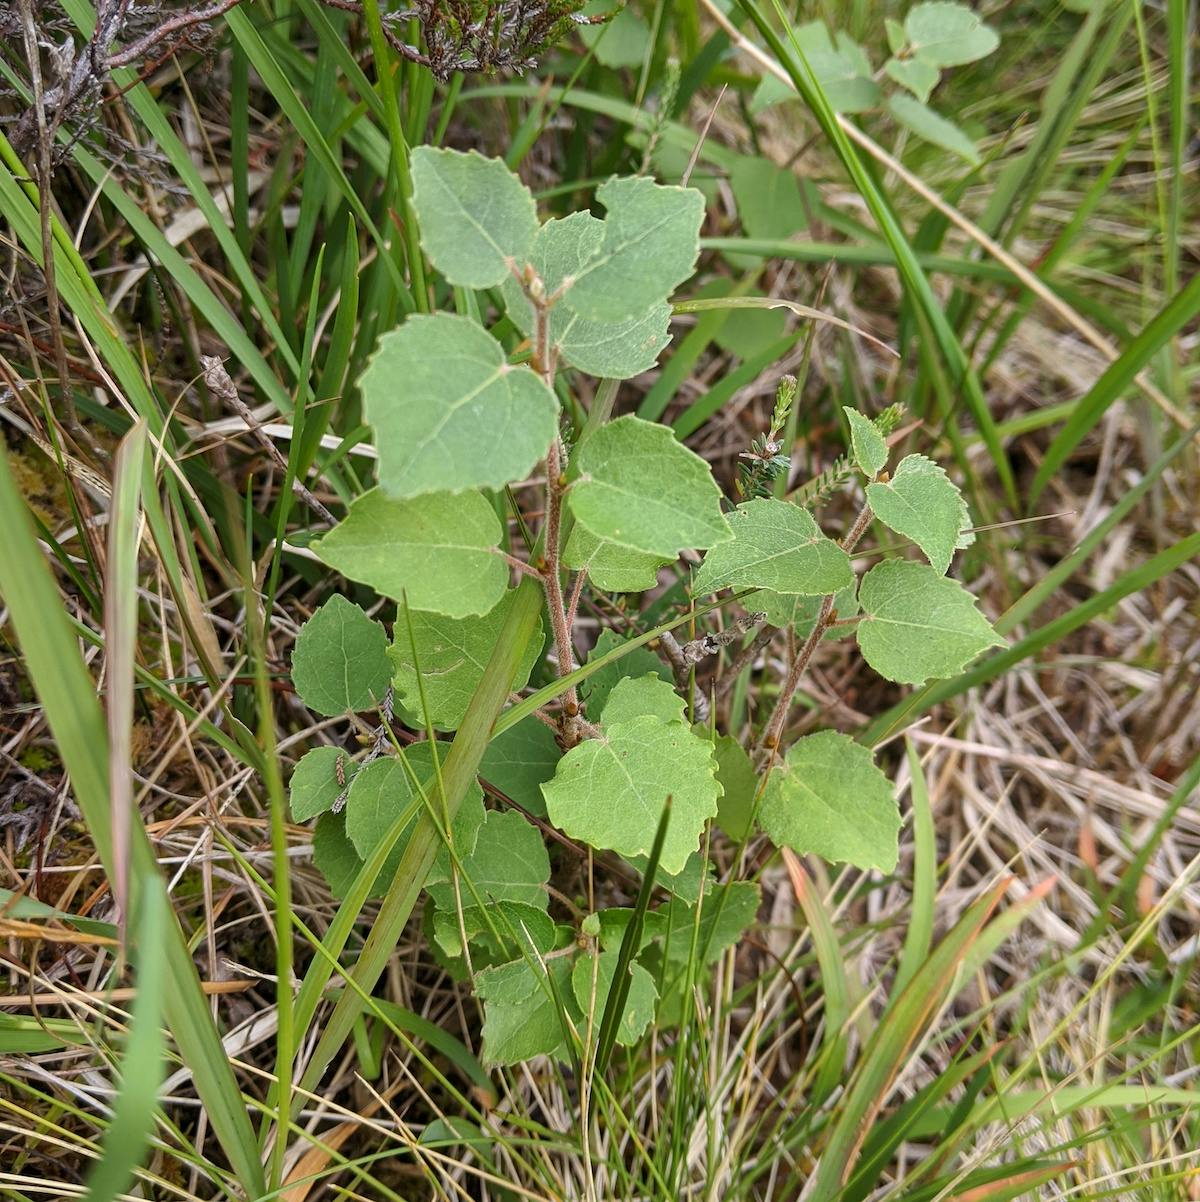 A small aspen seedling growing among dense grass 